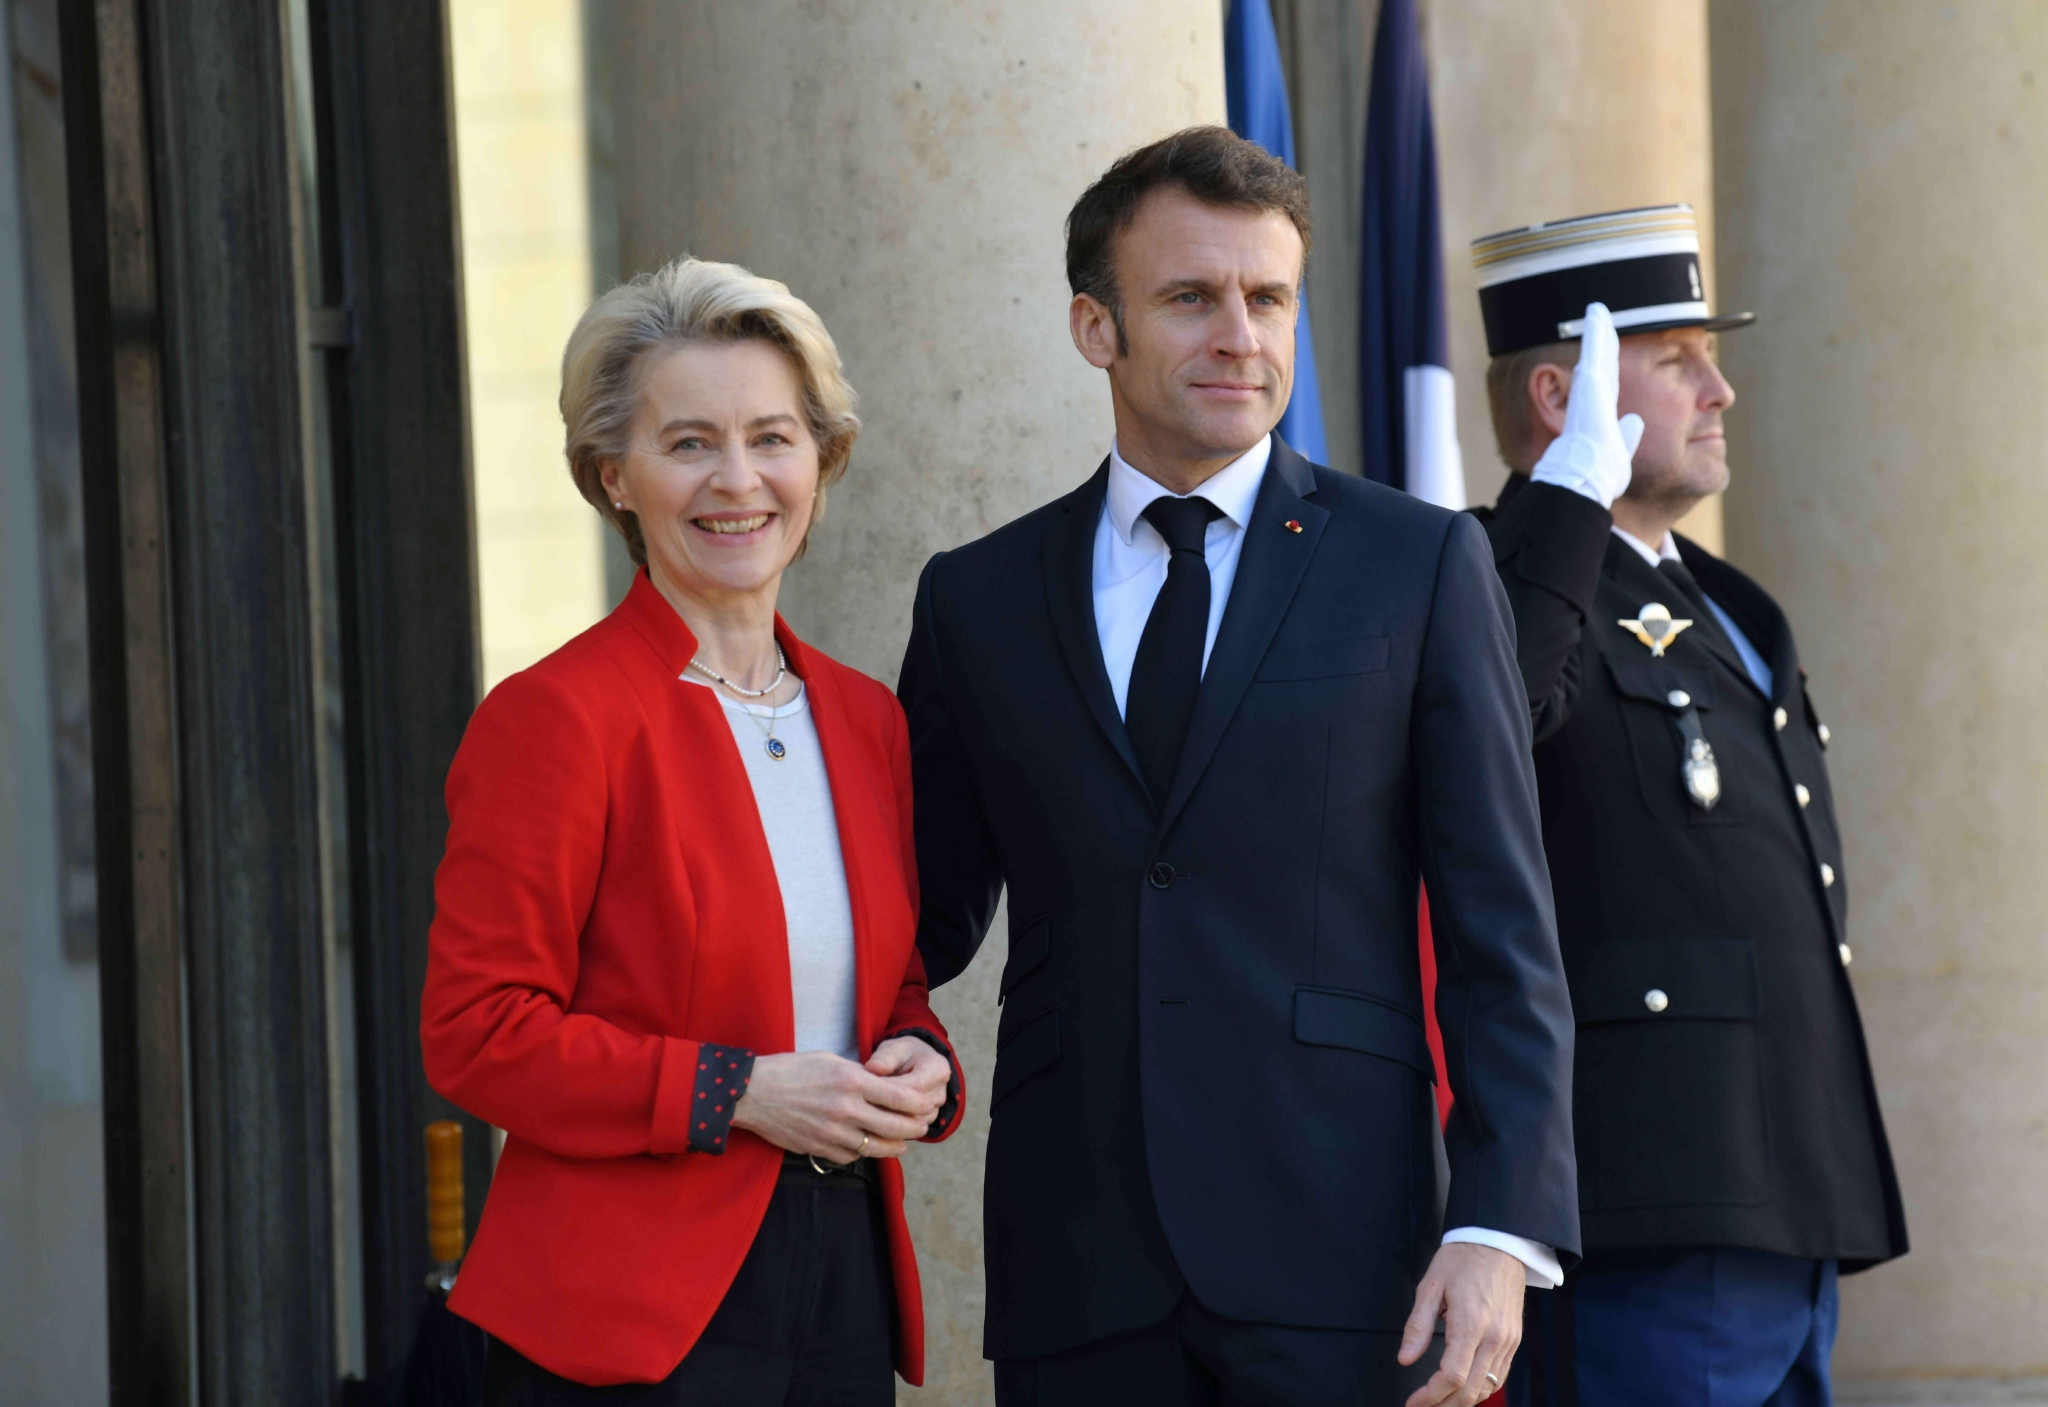  ▲当地时间2023年4月3日，法国总统马克龙在巴黎爱丽舍宫会见欧盟委员会主席冯德莱恩。此次访华，也是两人同行。图/IC photo